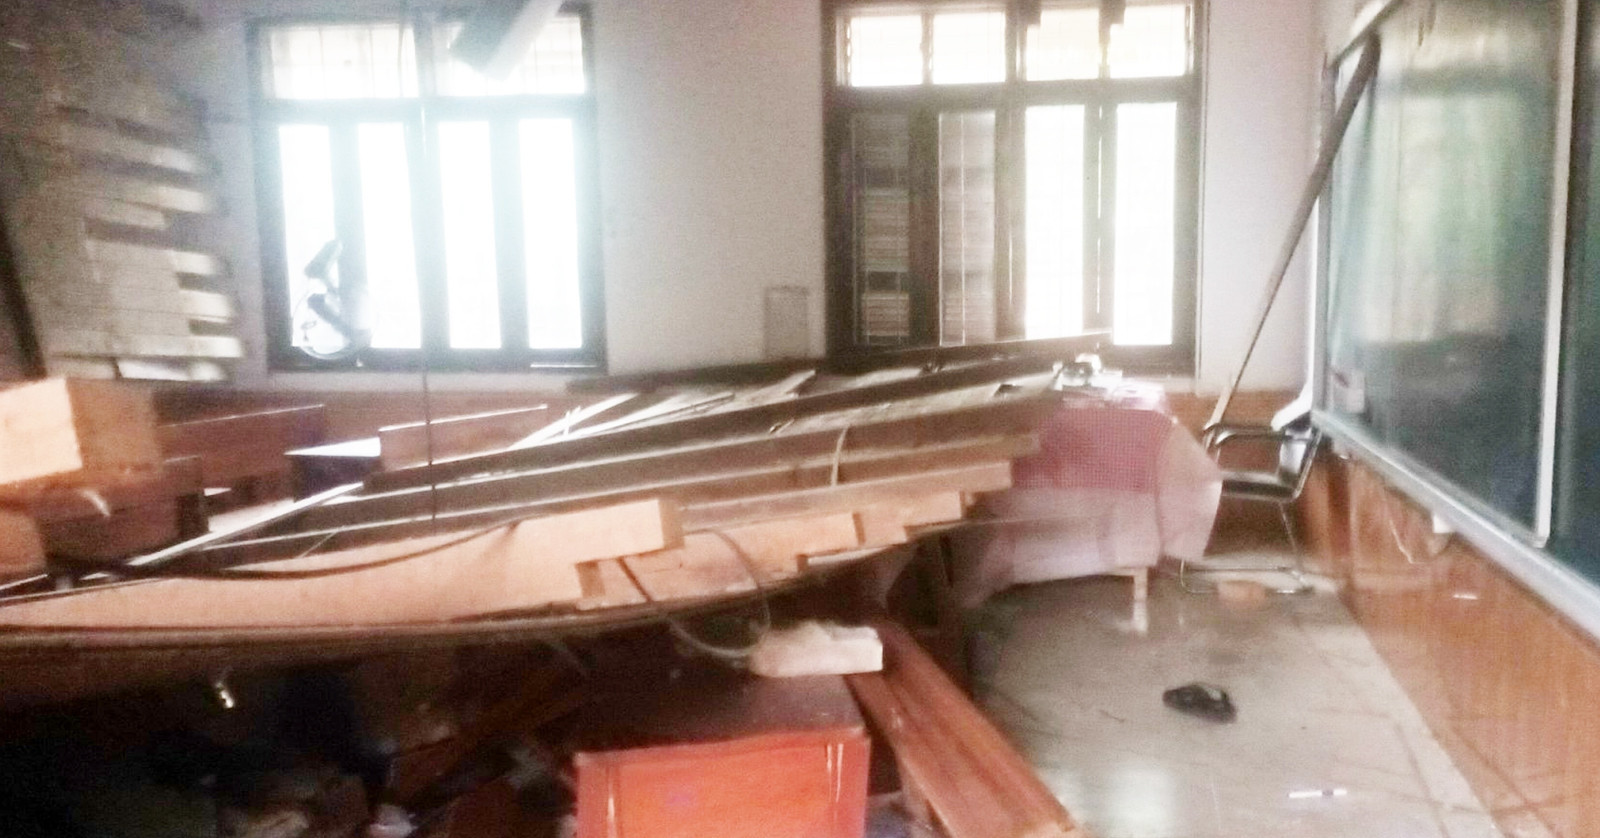 Vụ sập trần gỗ lớp học ở Nghệ An: Bộ Y tế yêu cầu tập trung cứu chữa